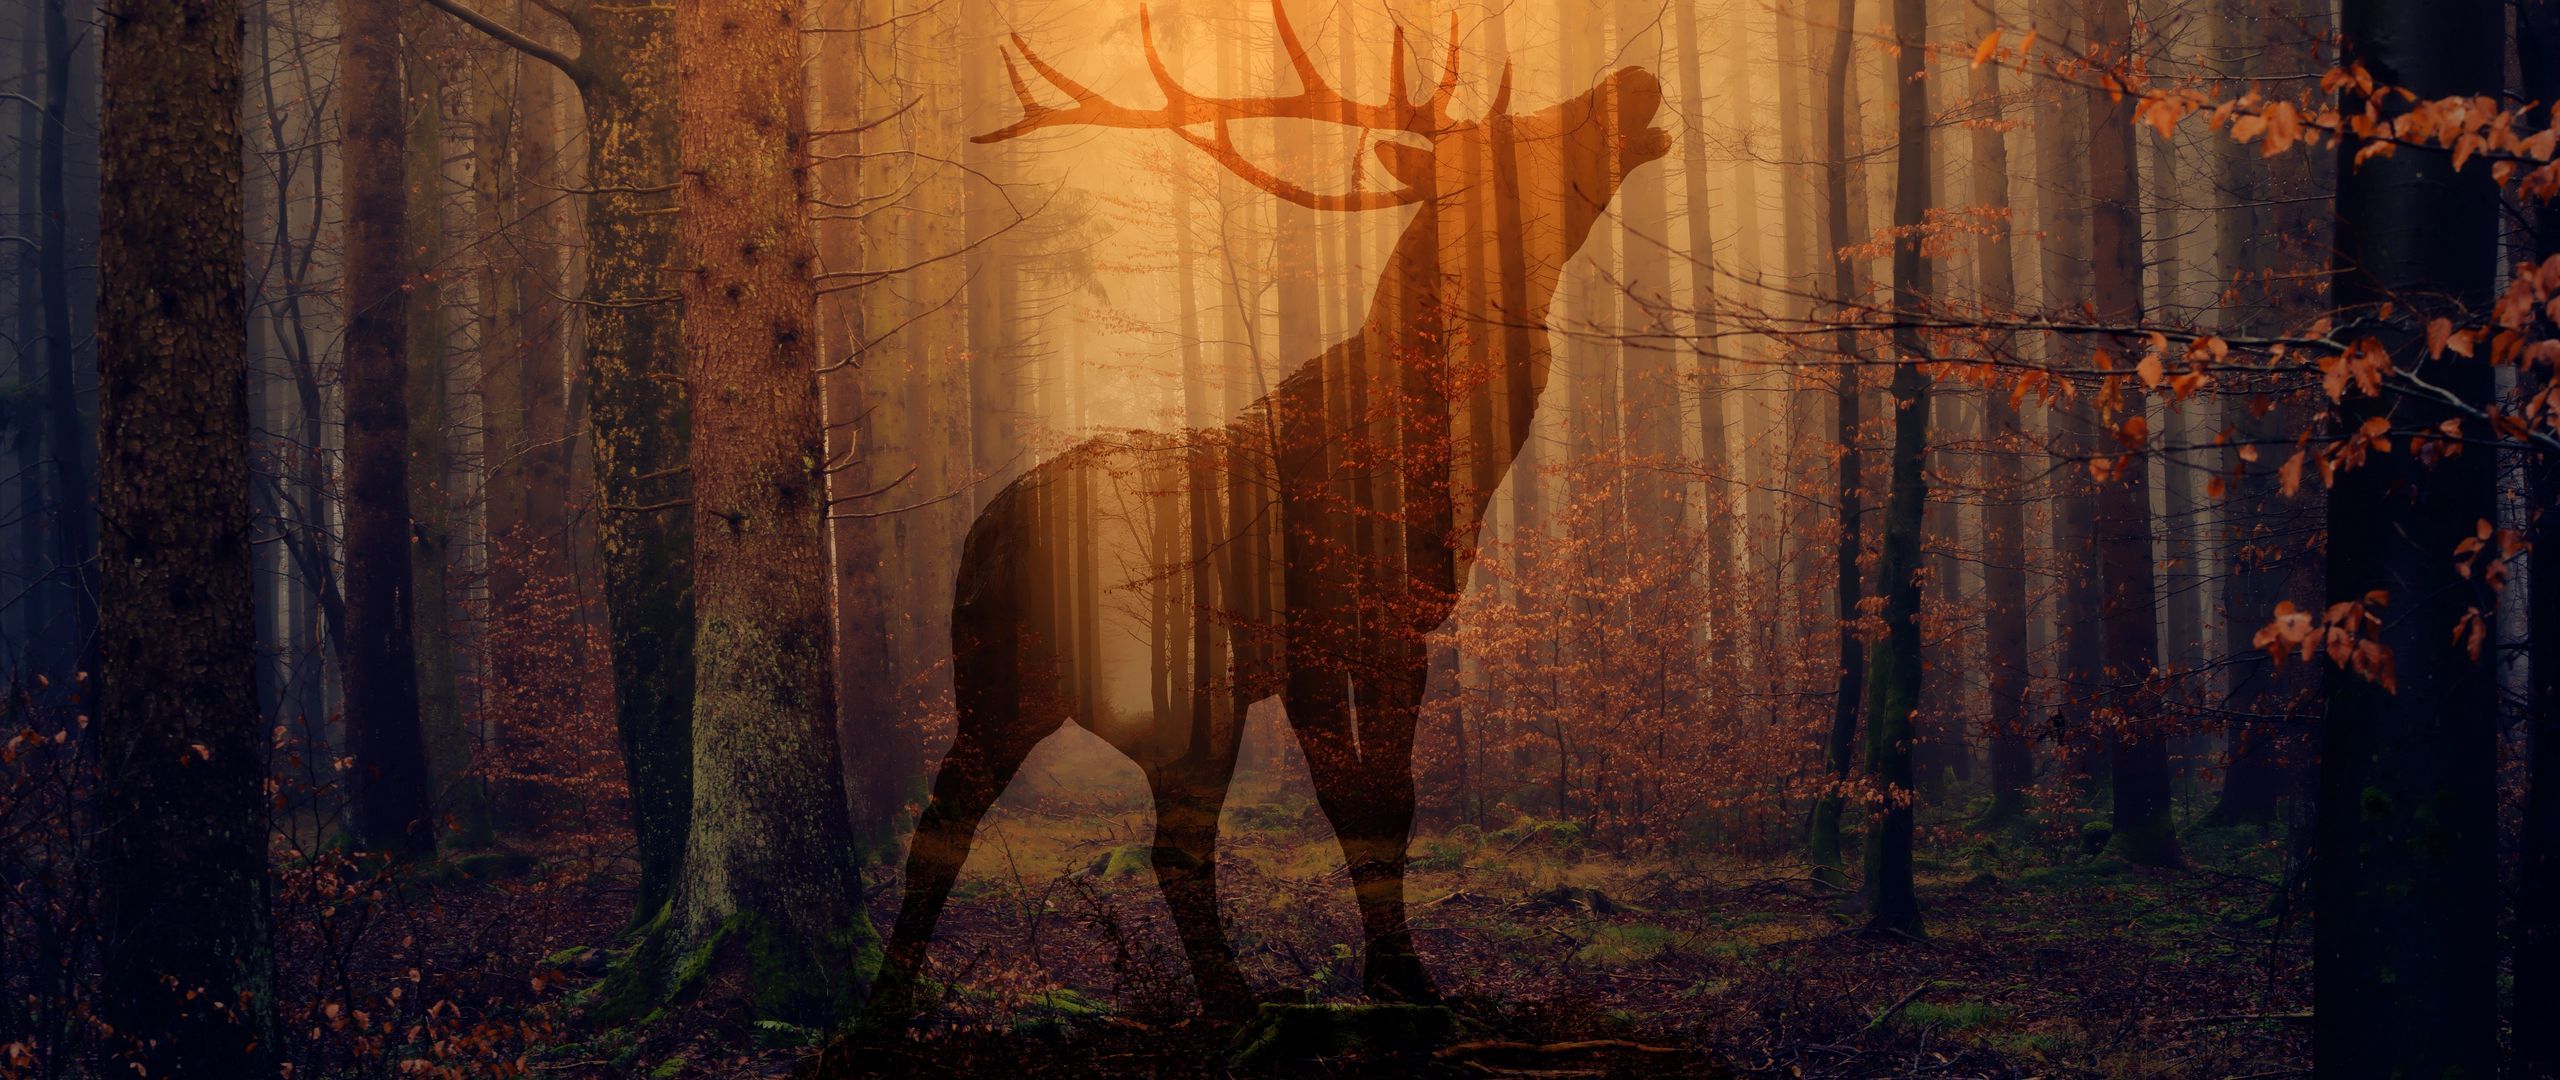 Download wallpaper 2560x1080 deer, forest, fog, silhouette, autumn